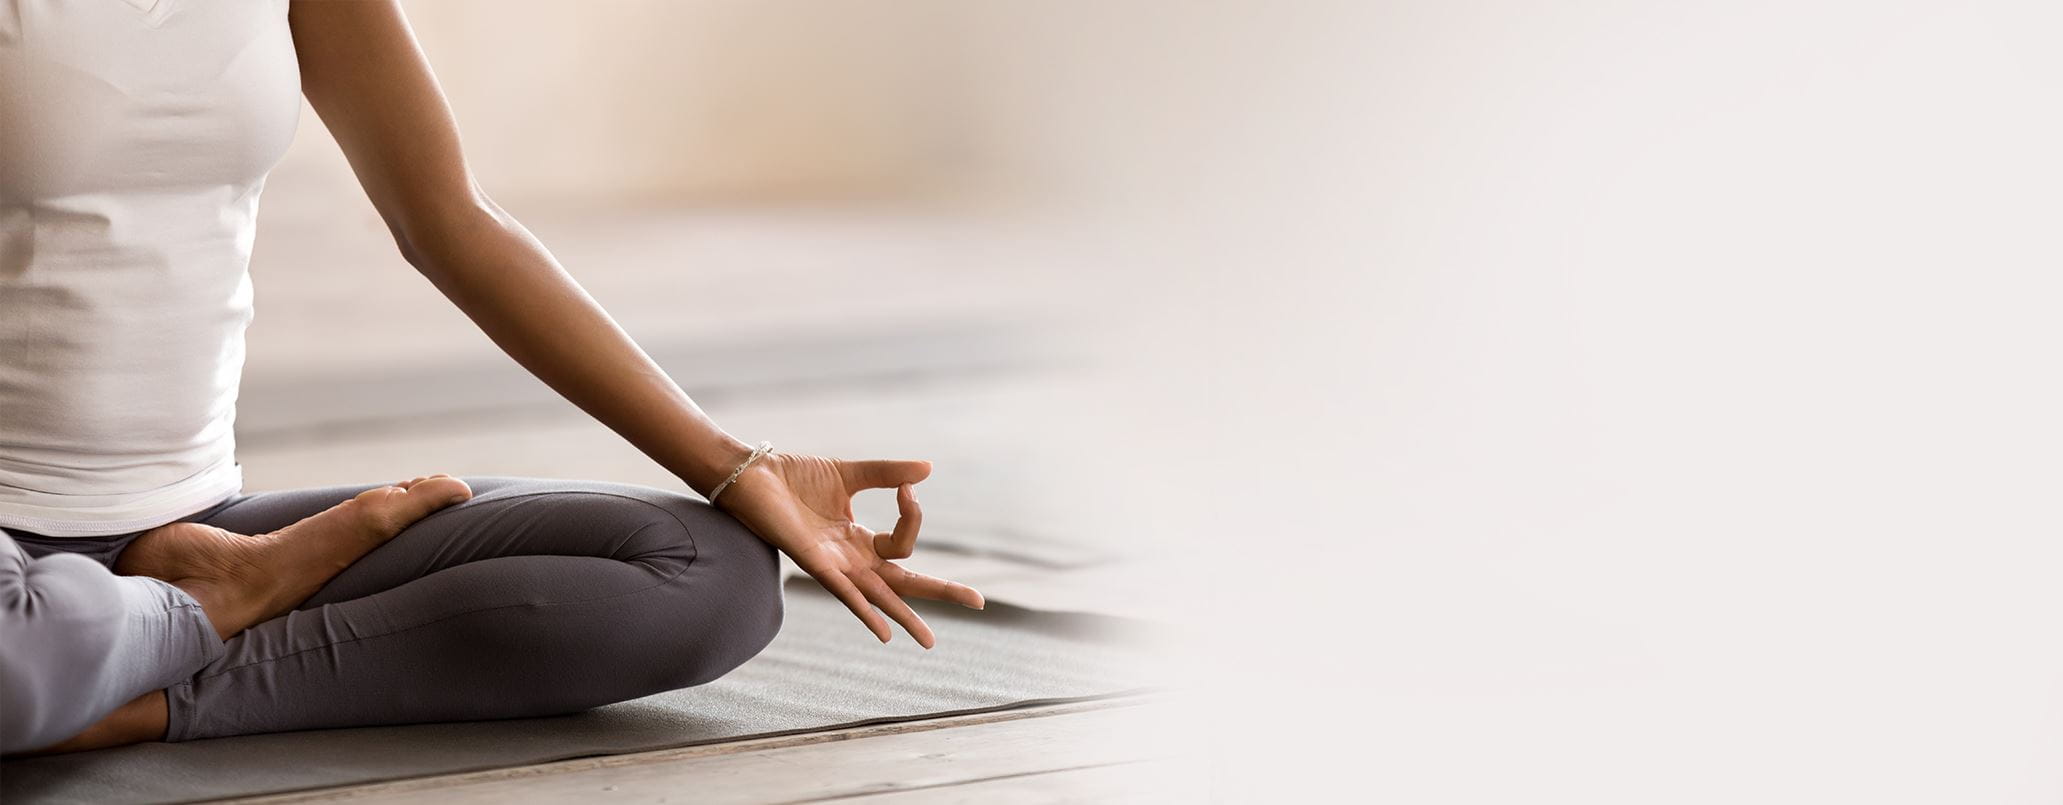 tutto sullo yoga: posizioni, benefici e controindicazioni